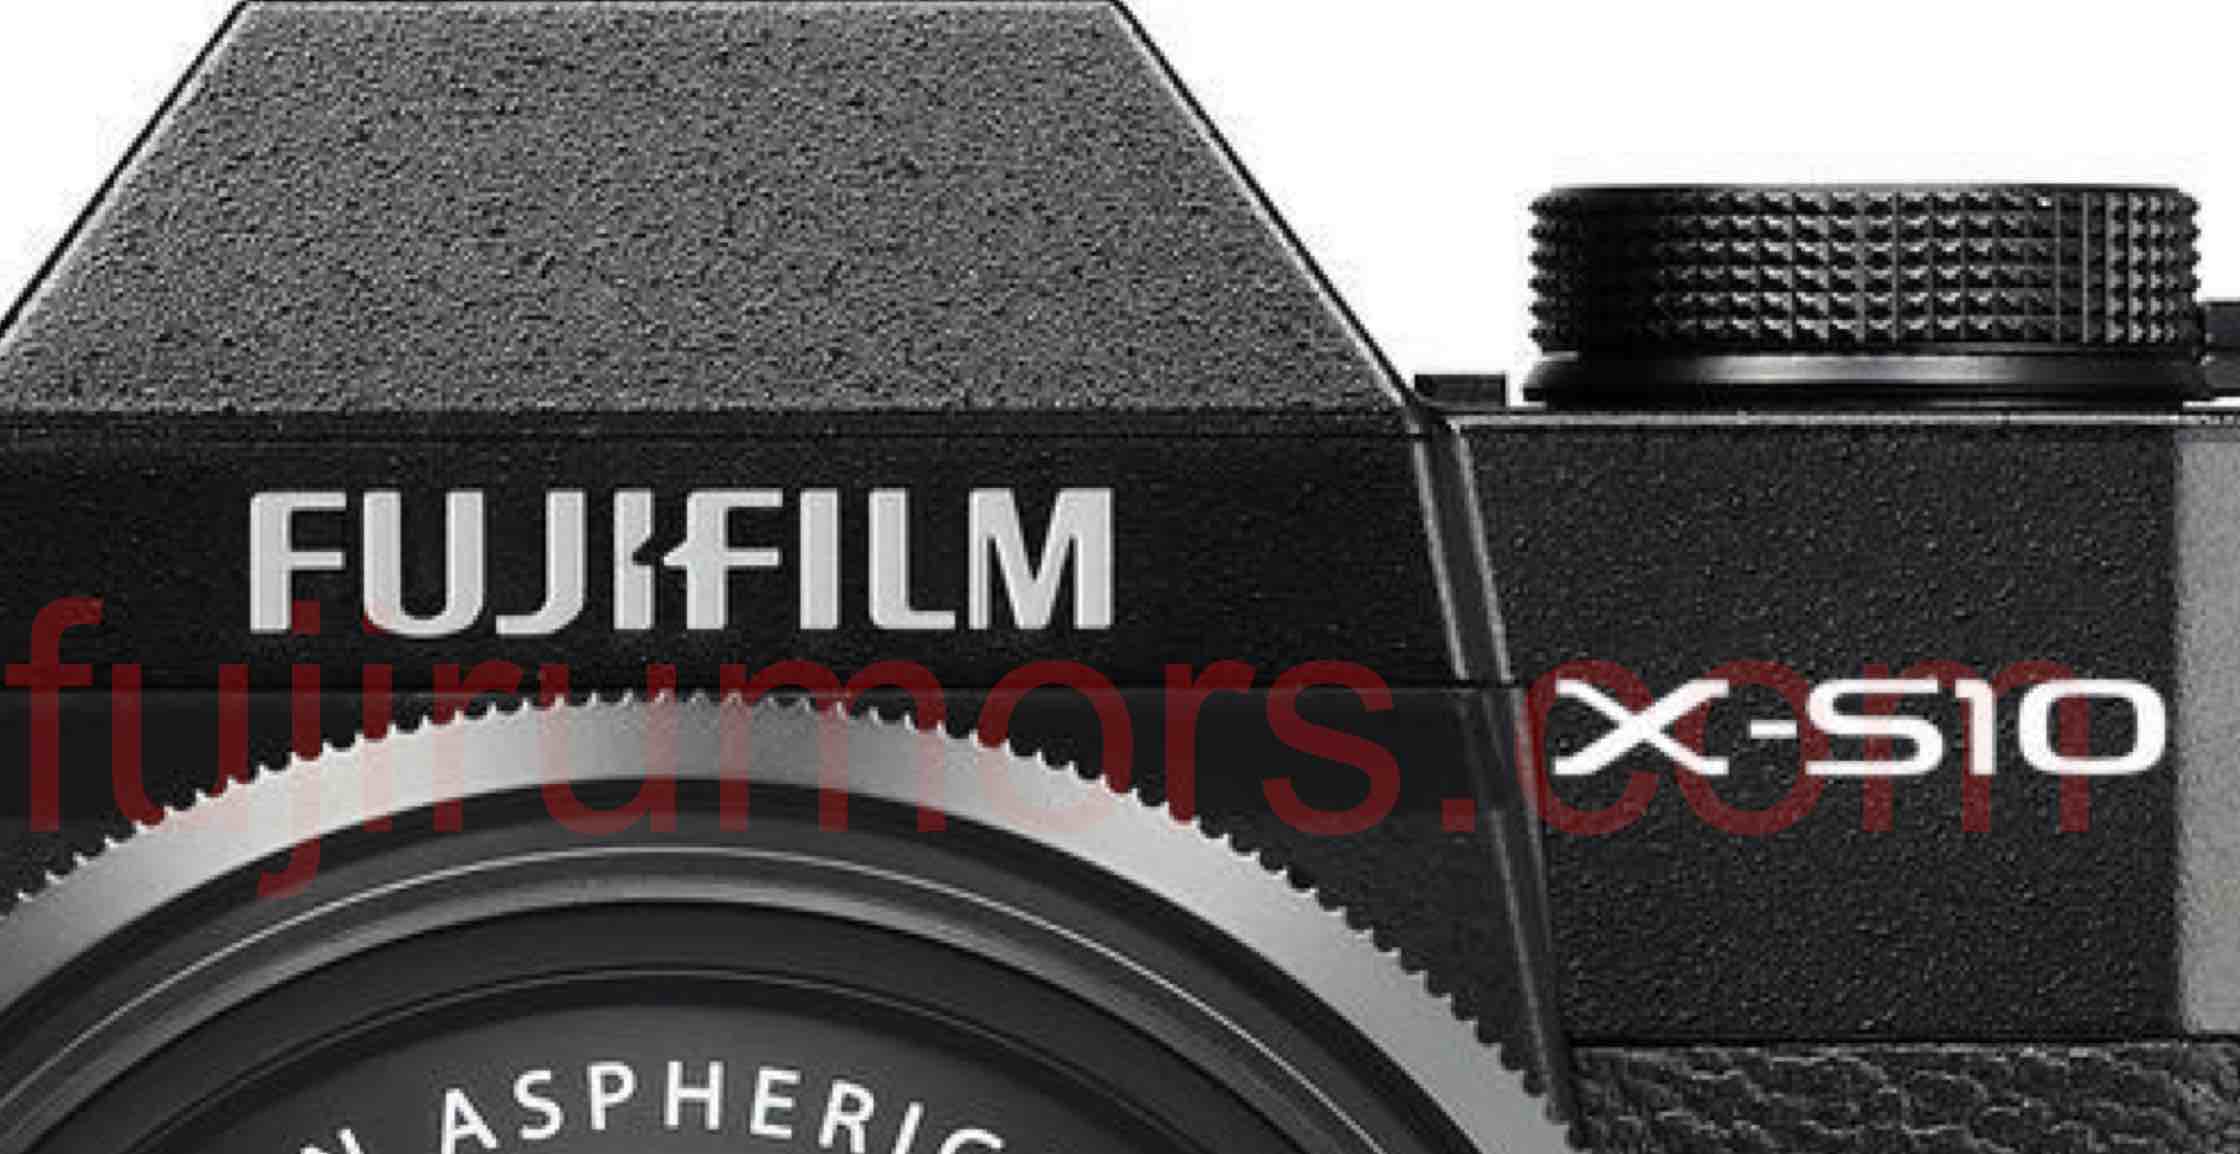 Fujifilm X-S10 sẽ có màn hình xoay lật giống như X-T4